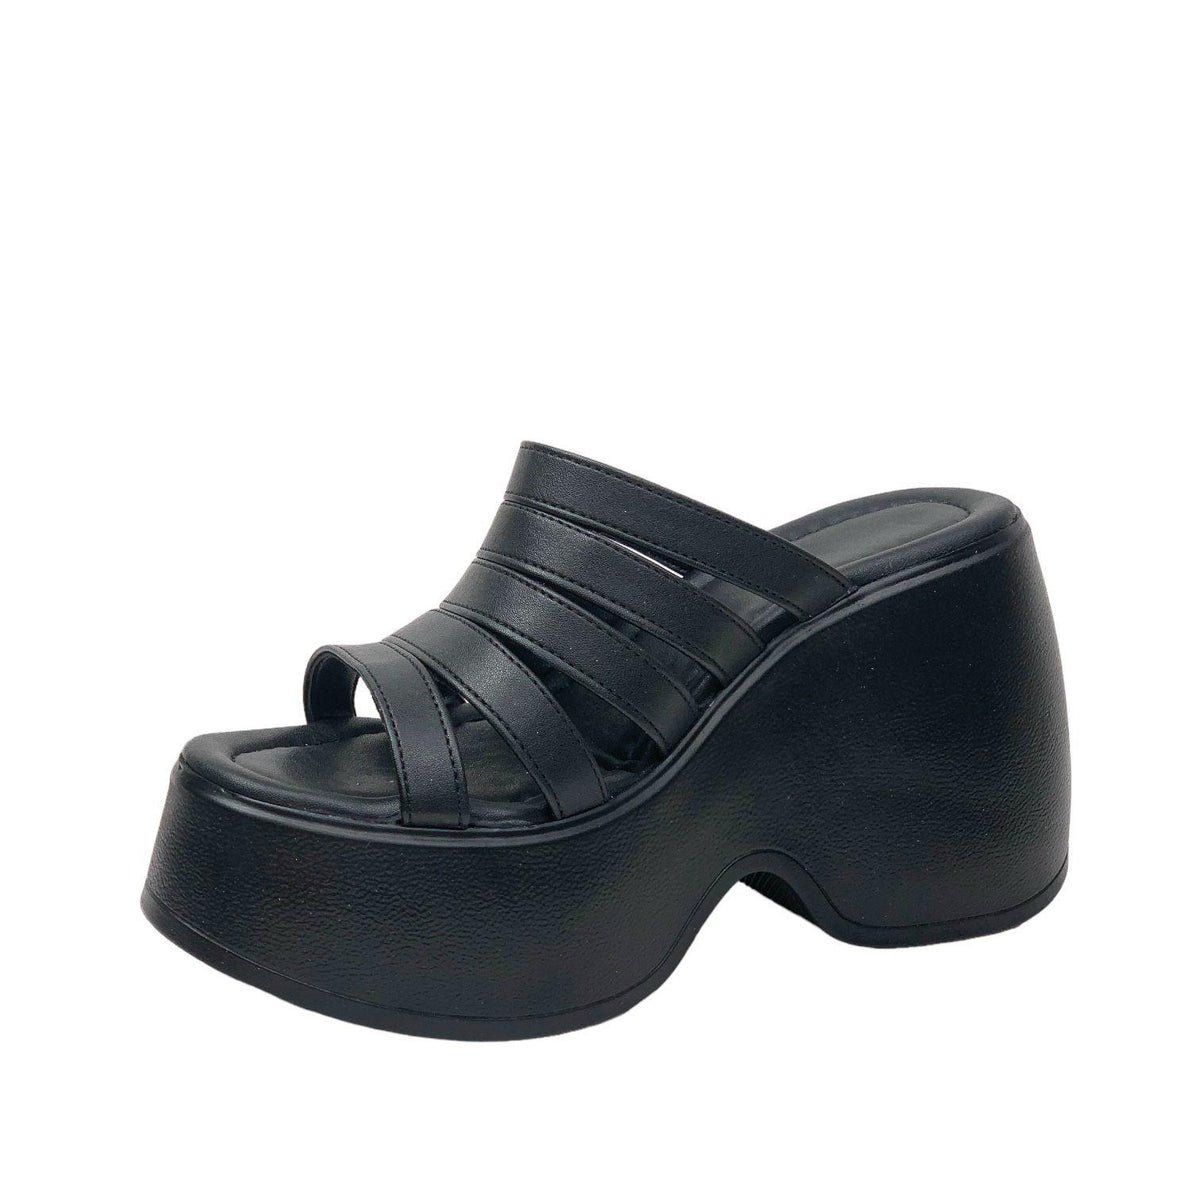 Women's Gehm Black Banded High Heel Platform Sandals 10 Cm DLG11